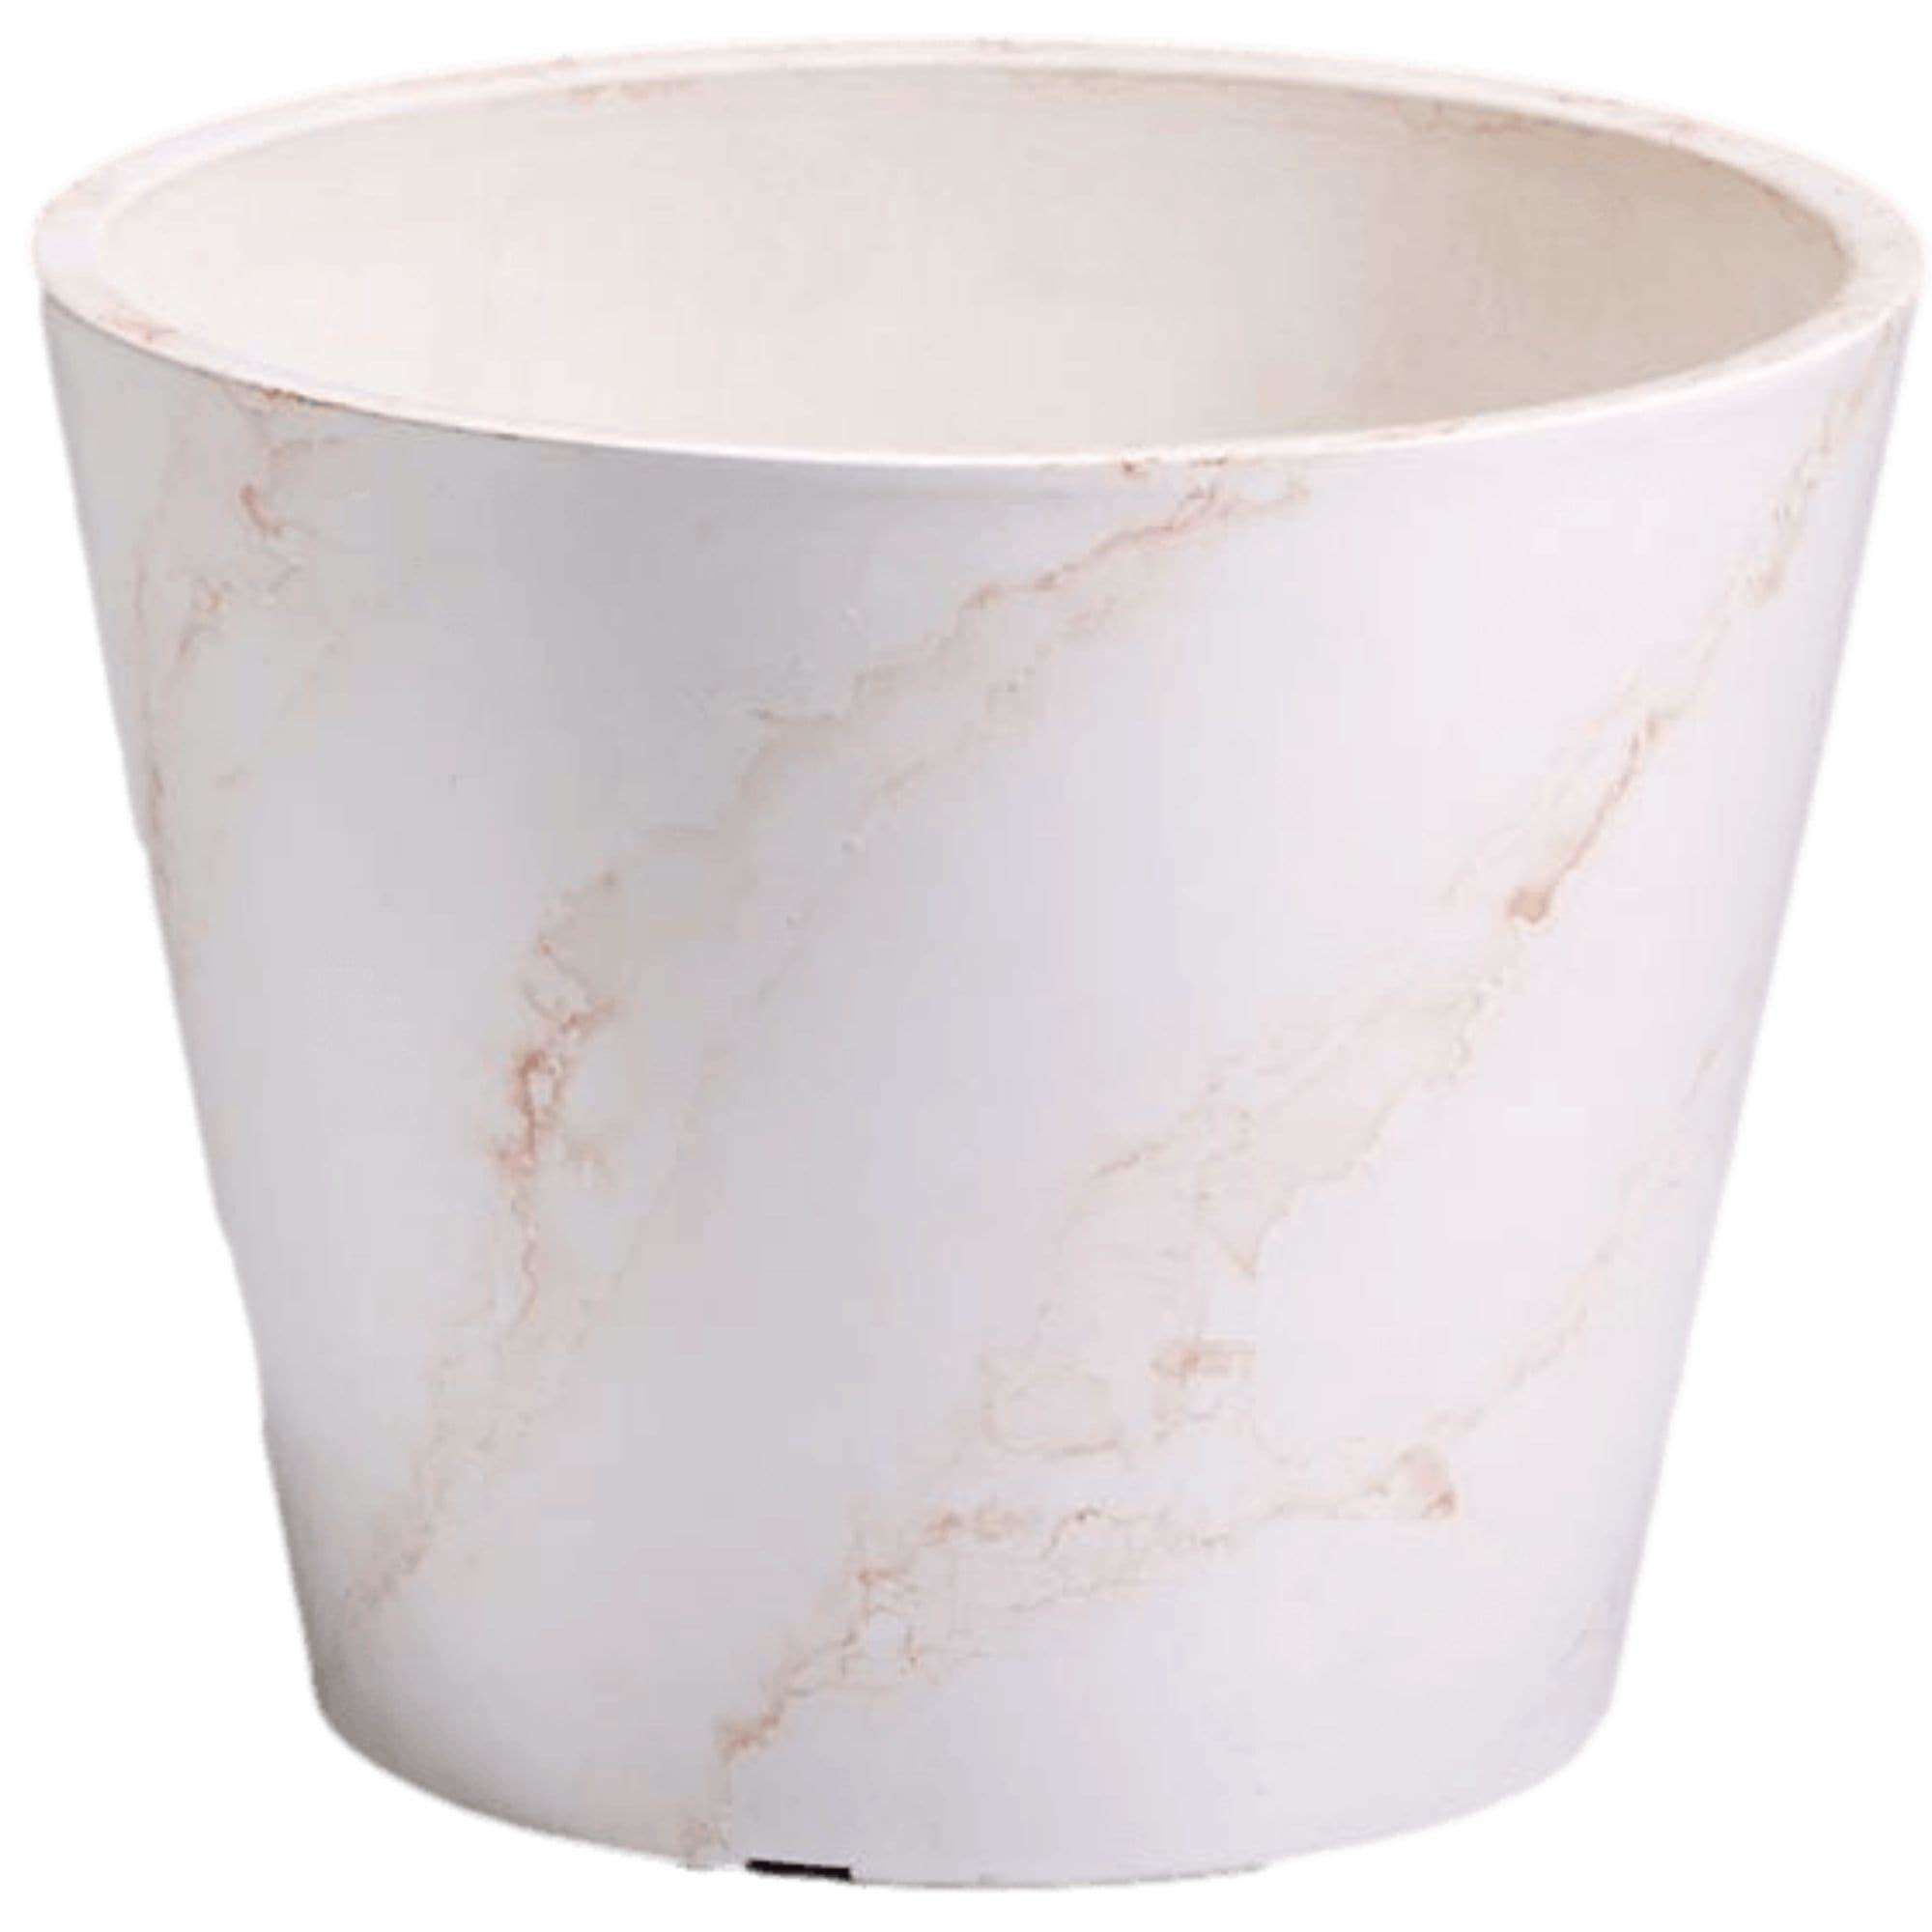 red-white-imitation-marble-pot-25cm-866583.jpg